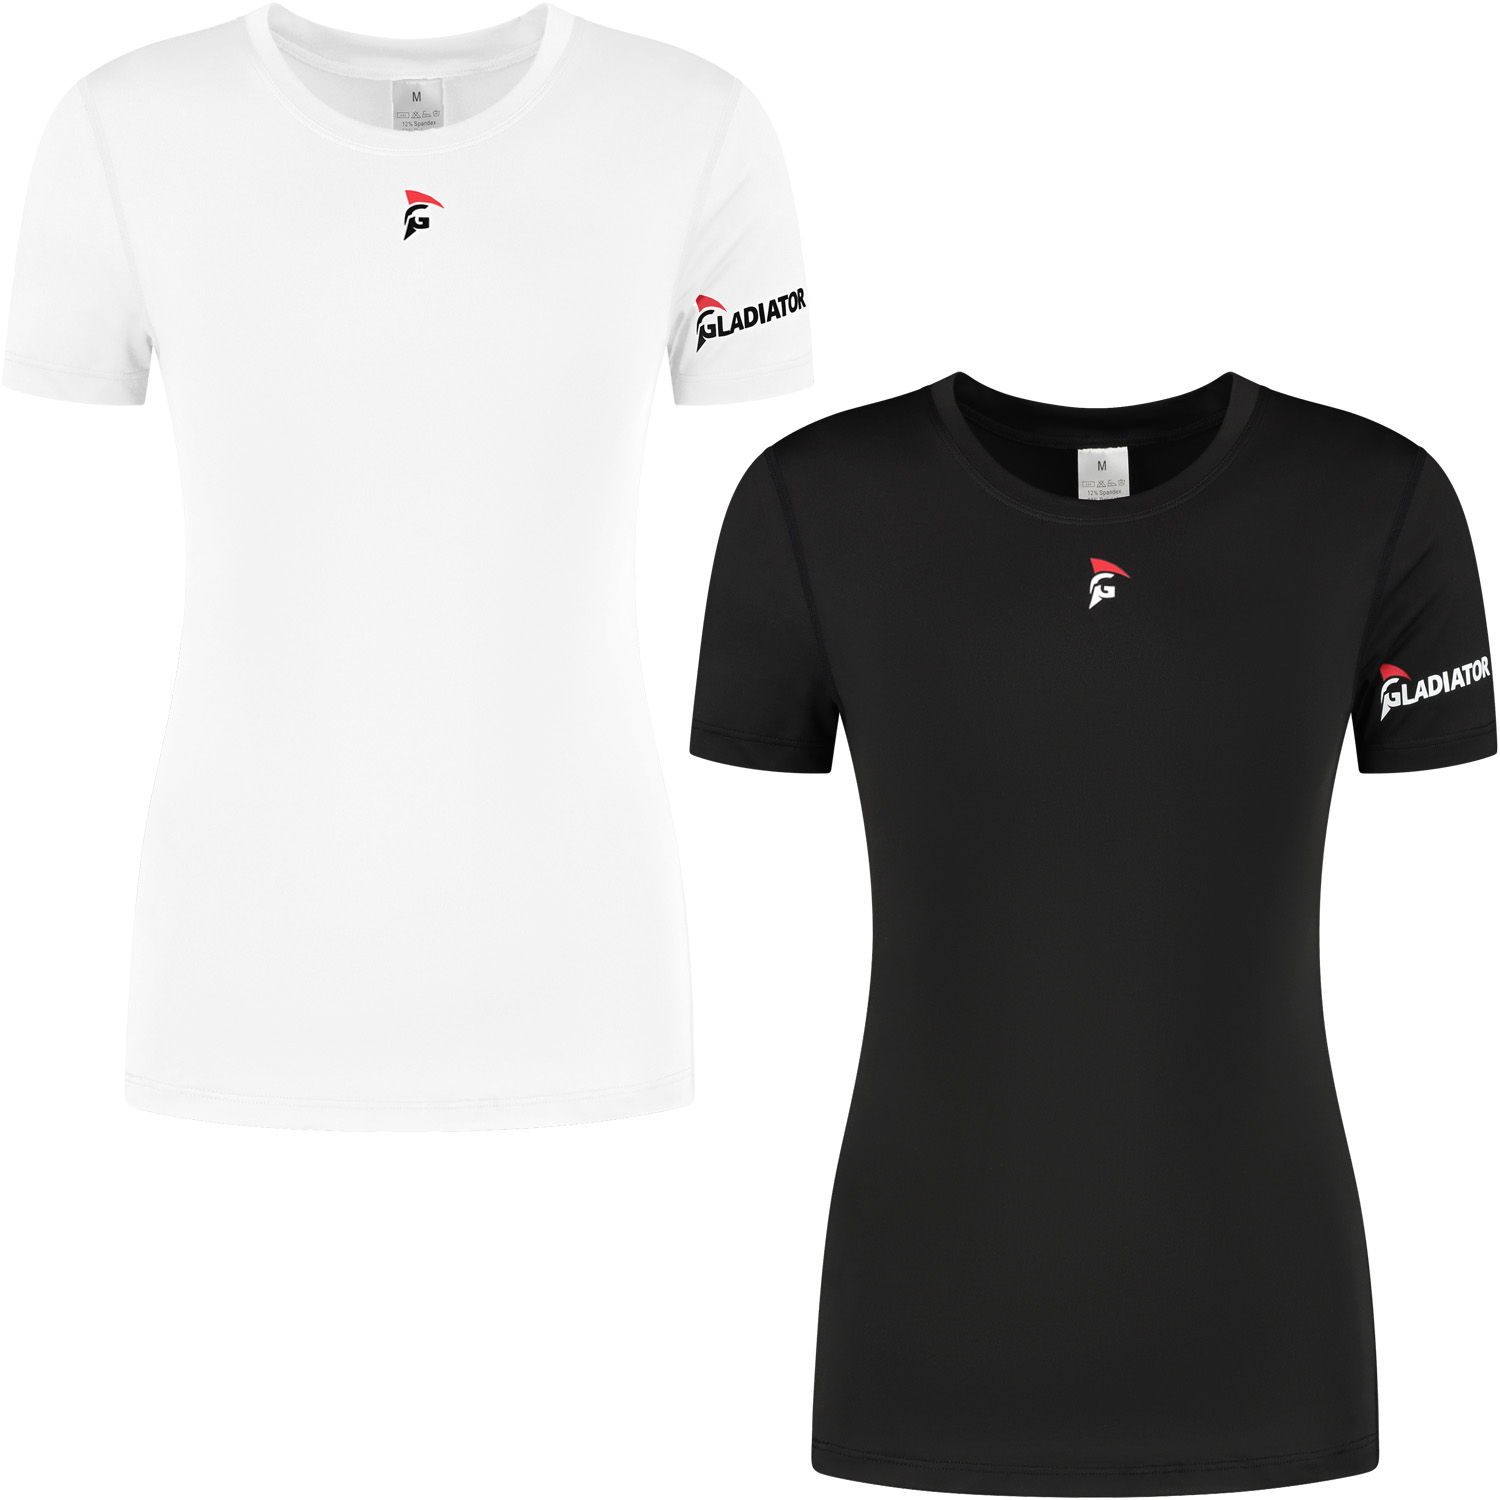 Gladiator Sports Thermal Shirt - Women